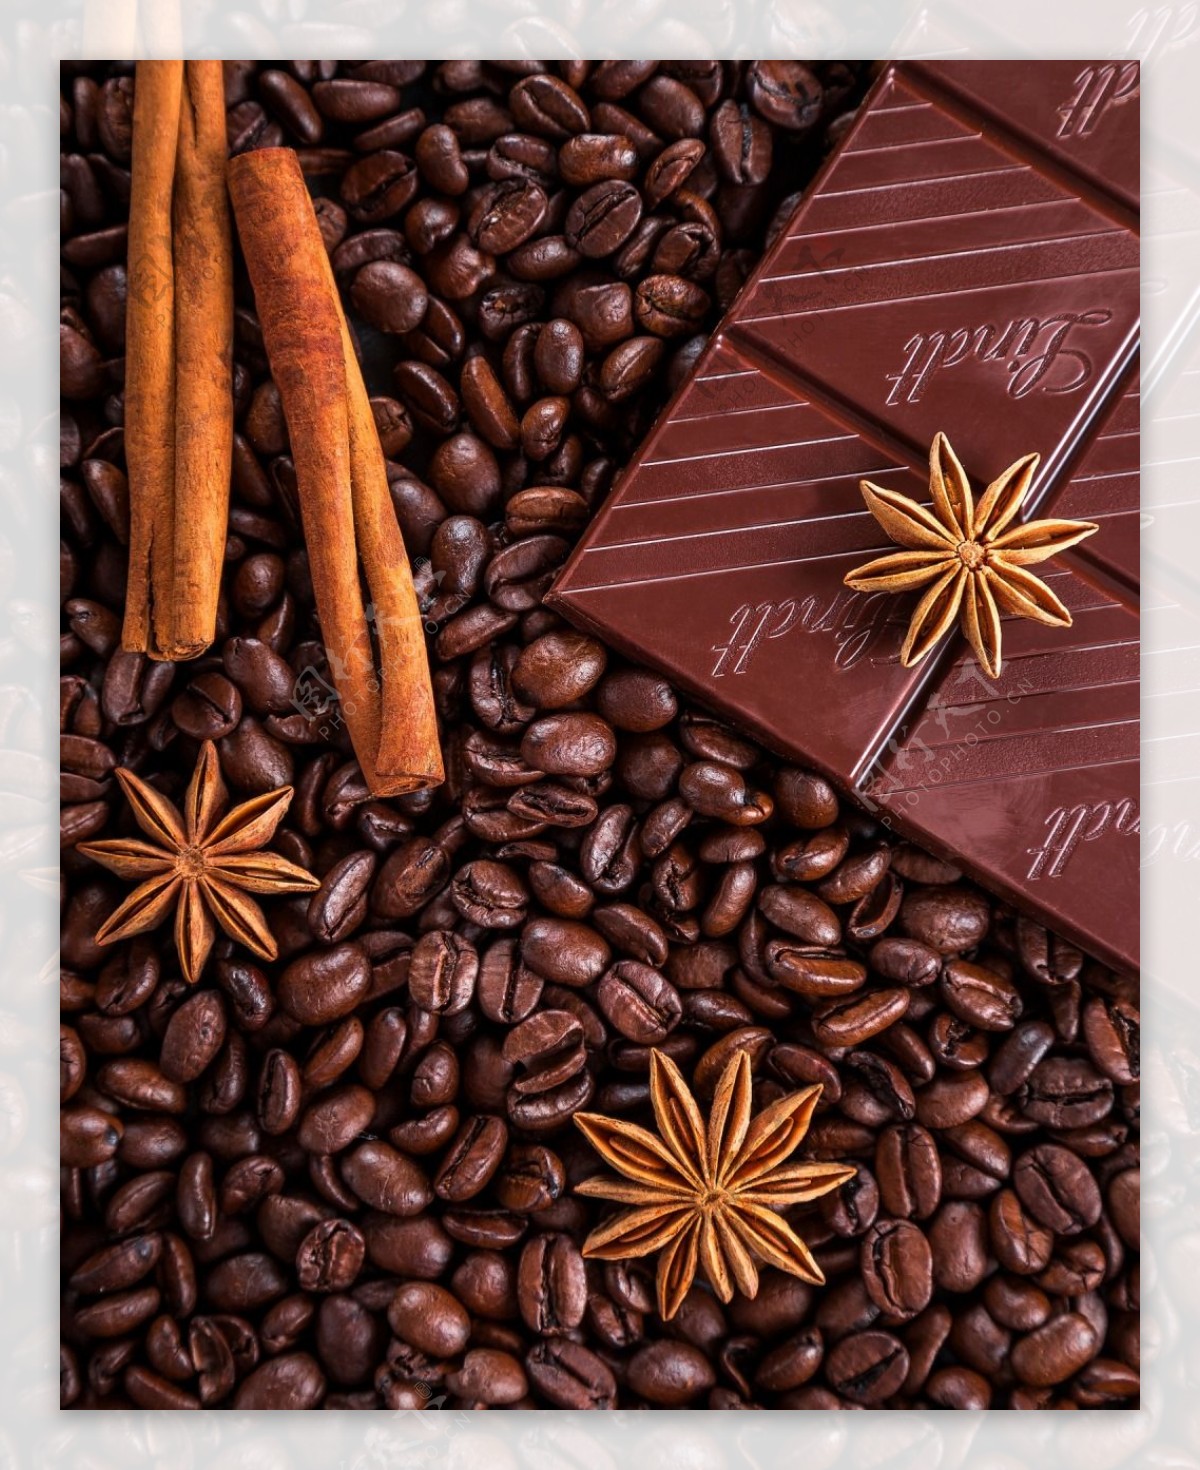 热咖啡与咖啡豆麻布44800_咖啡/巧克力/牛奶_美食类_图库壁纸_68Design